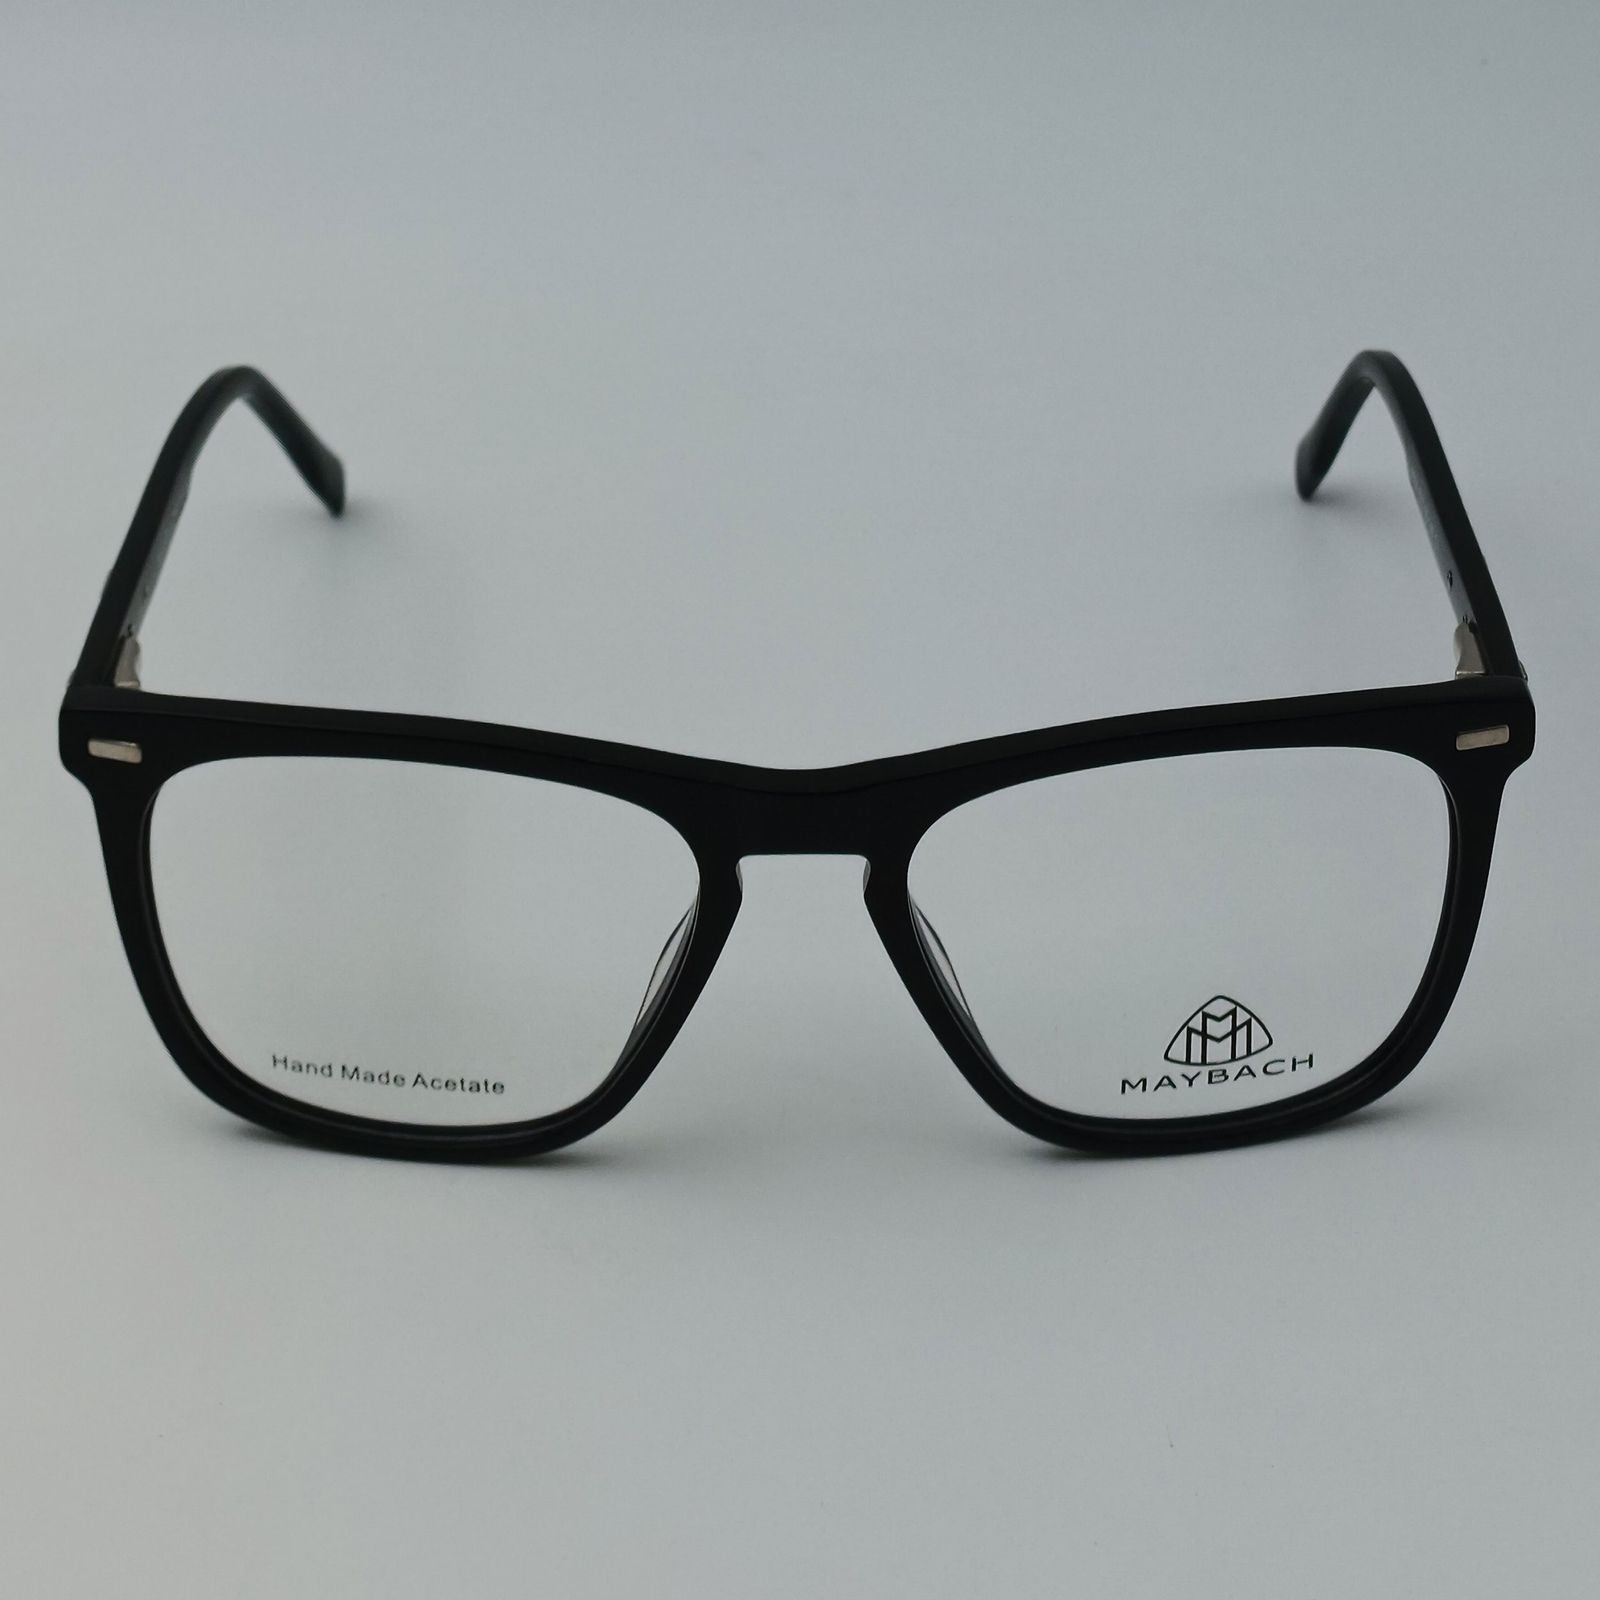 فریم عینک طبی میباخ مدل 6504 C1 -  - 2